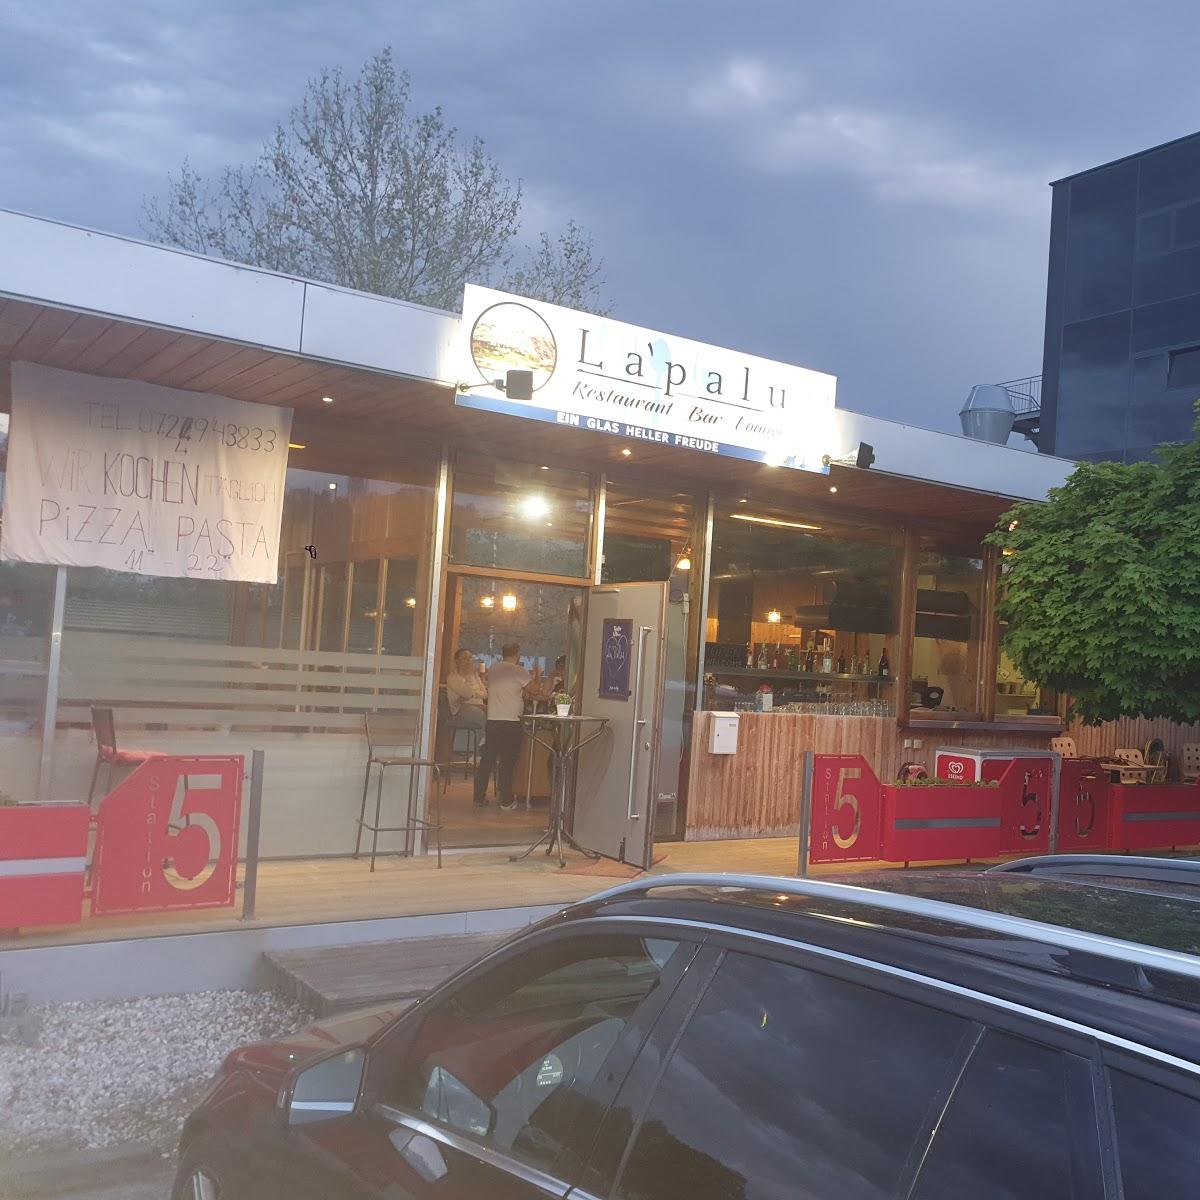 Restaurant "La palu Restaurant bar lounge" in Wallern an der Trattnach